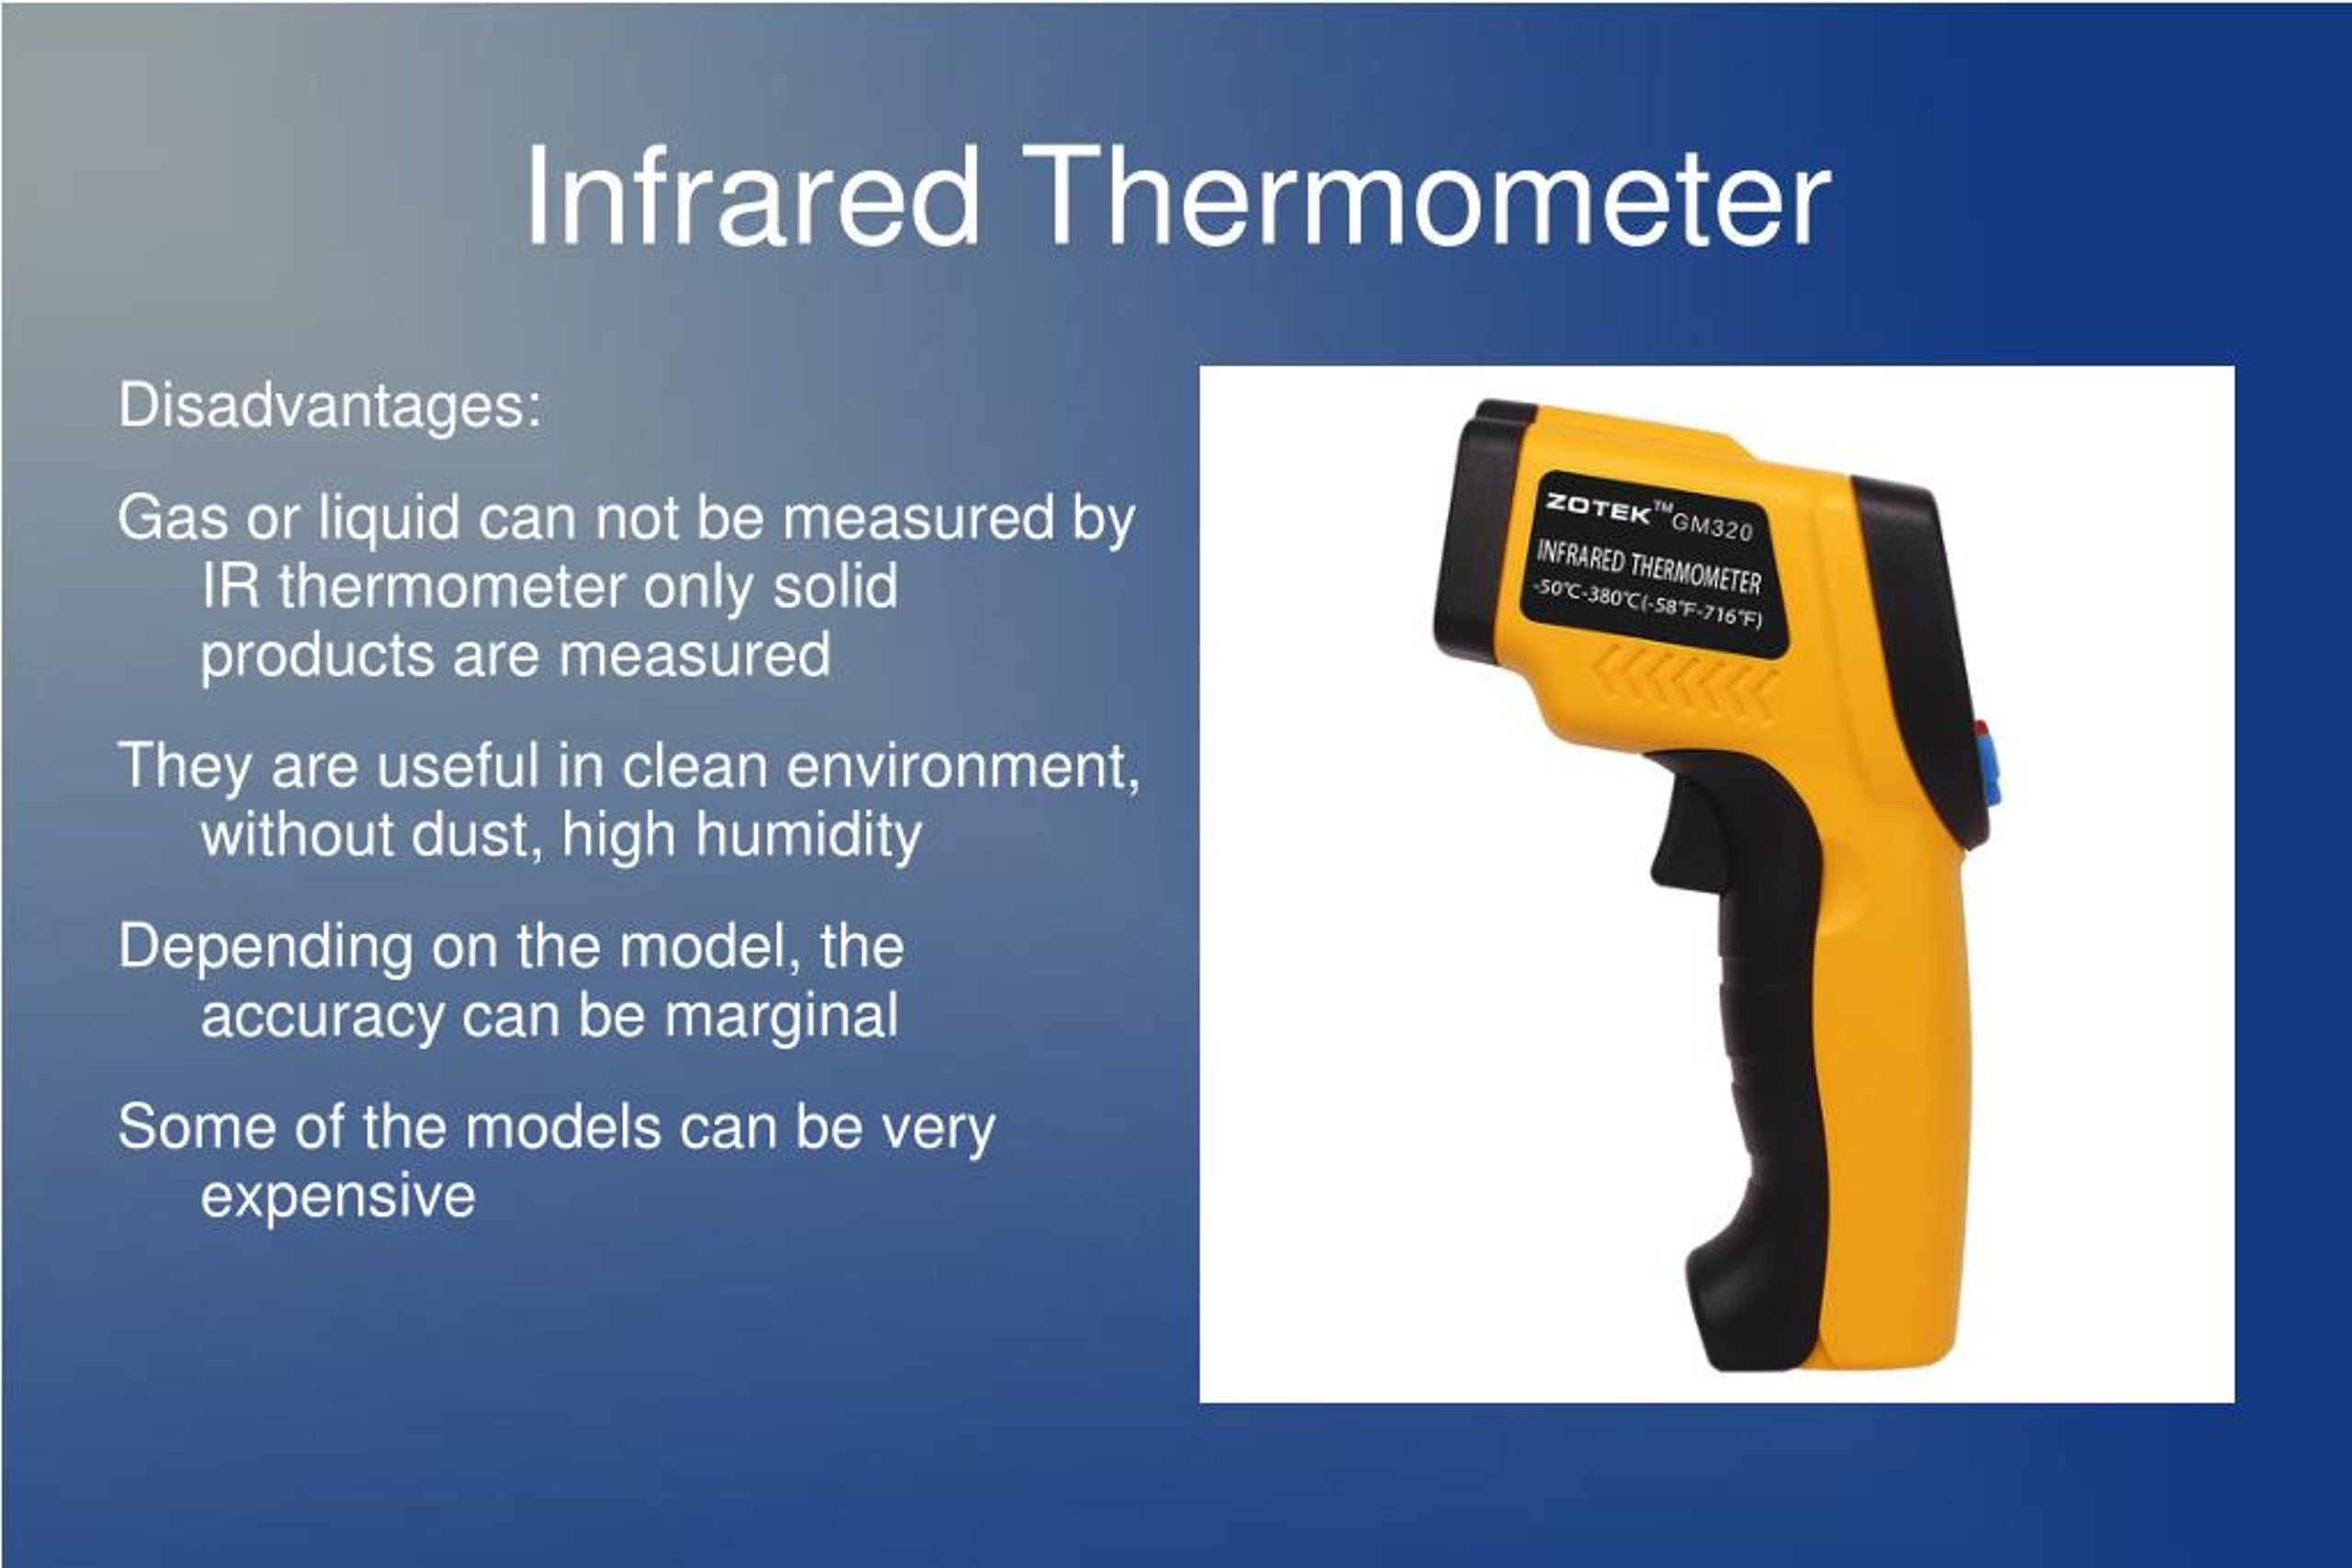 https://image4.slideserve.com/7707818/infrared-thermometer-2-l.jpg